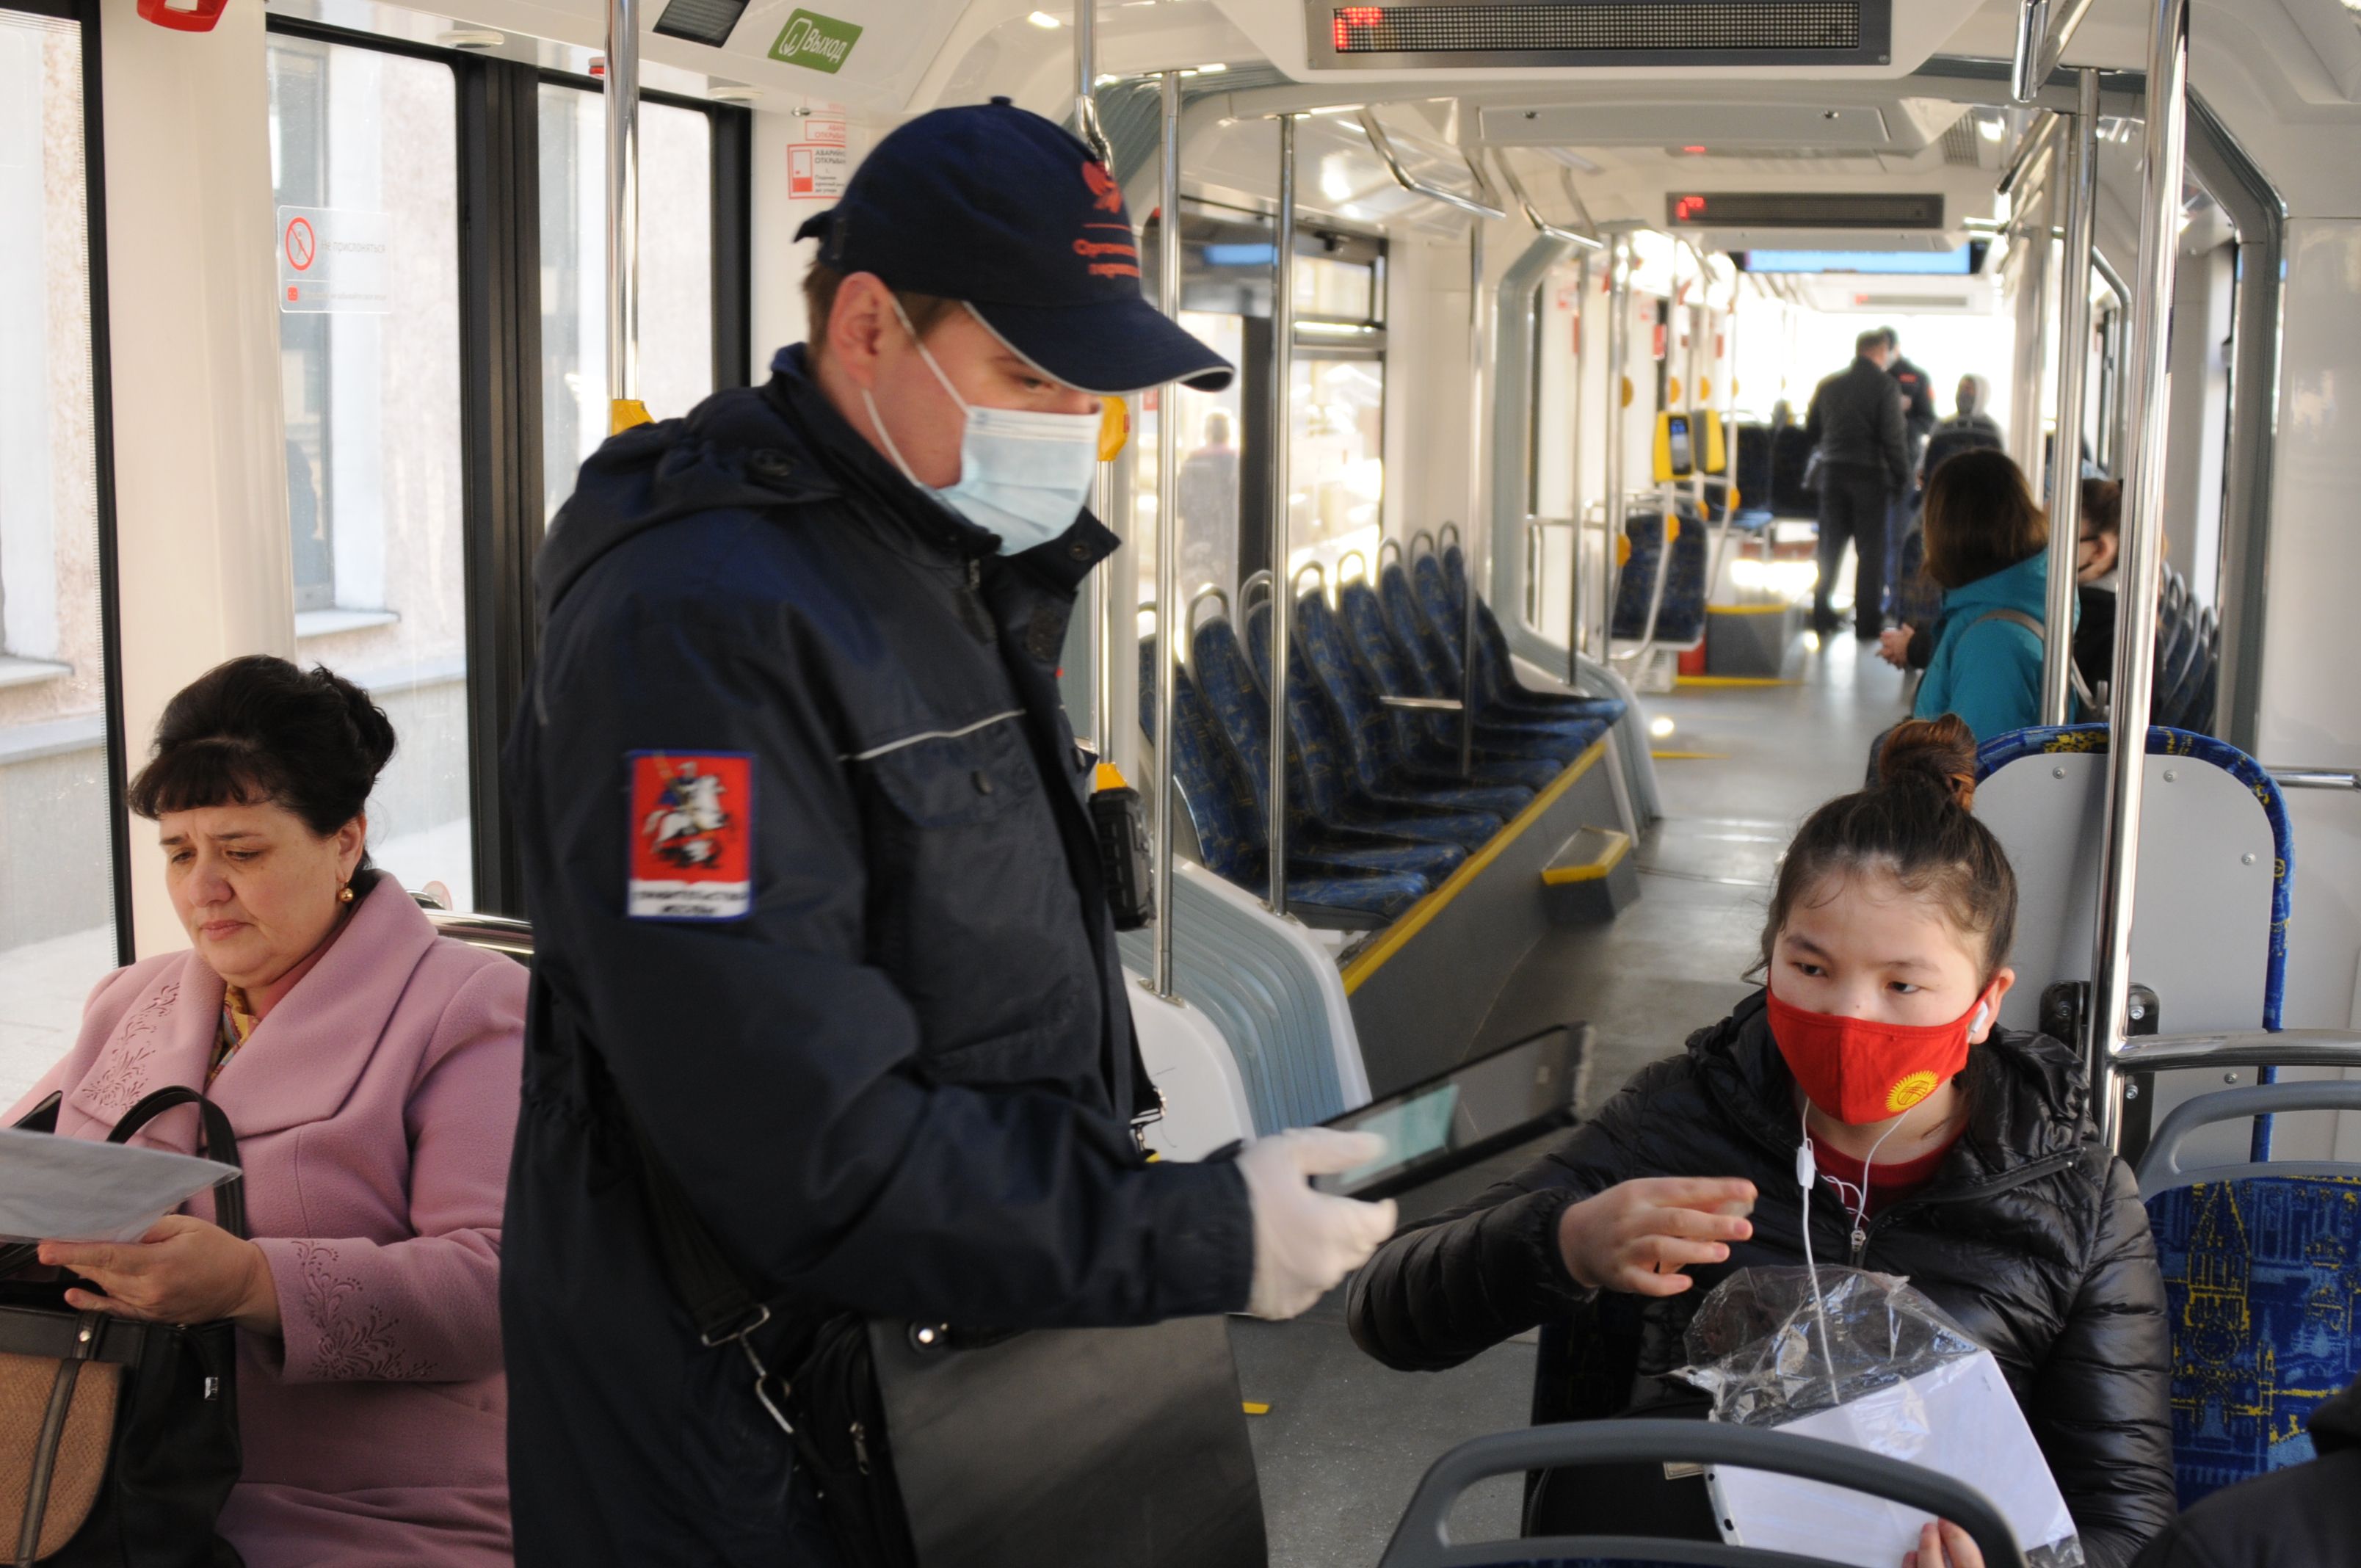 27 апреля 2020 года. Наличие цифрового пропуска у пассажира в общественном транспорте могут проверить не только сотрудники полиции, но и контролеры. Фото: